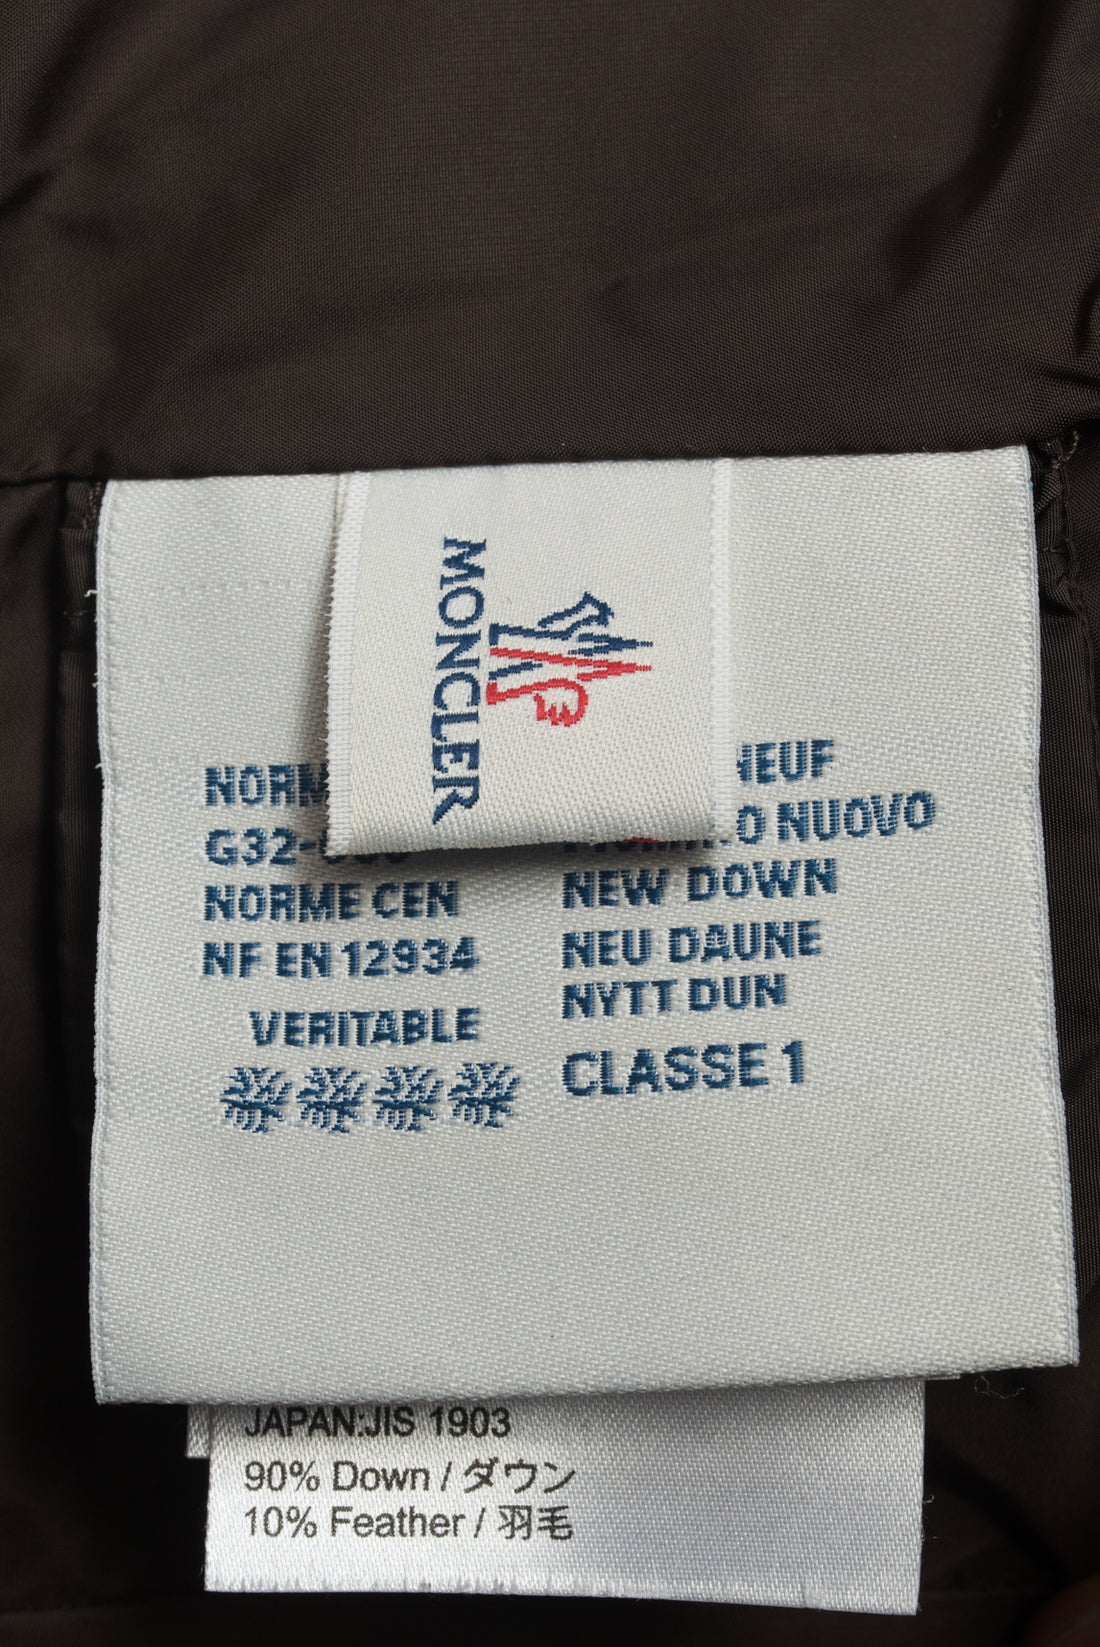 moncler jacket size conversion